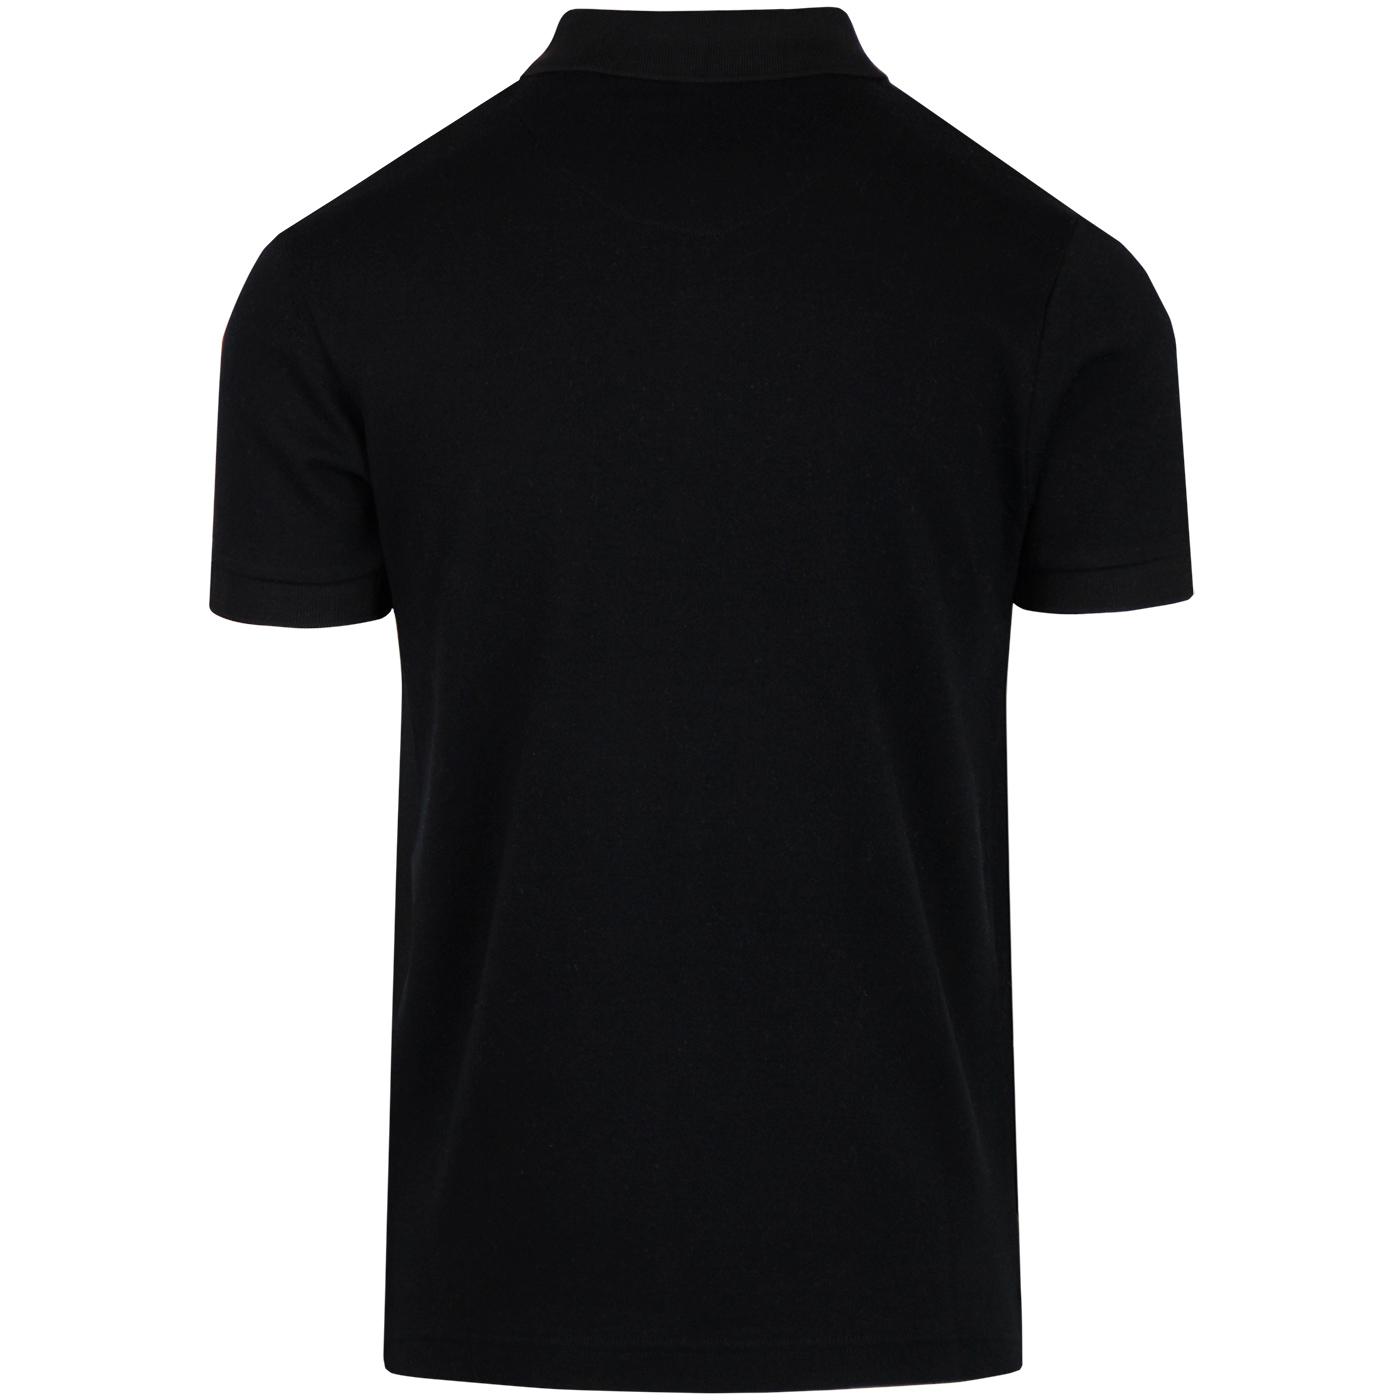 TROJAN RECORDS Retro Mod Check Front Polo Shirt in Black